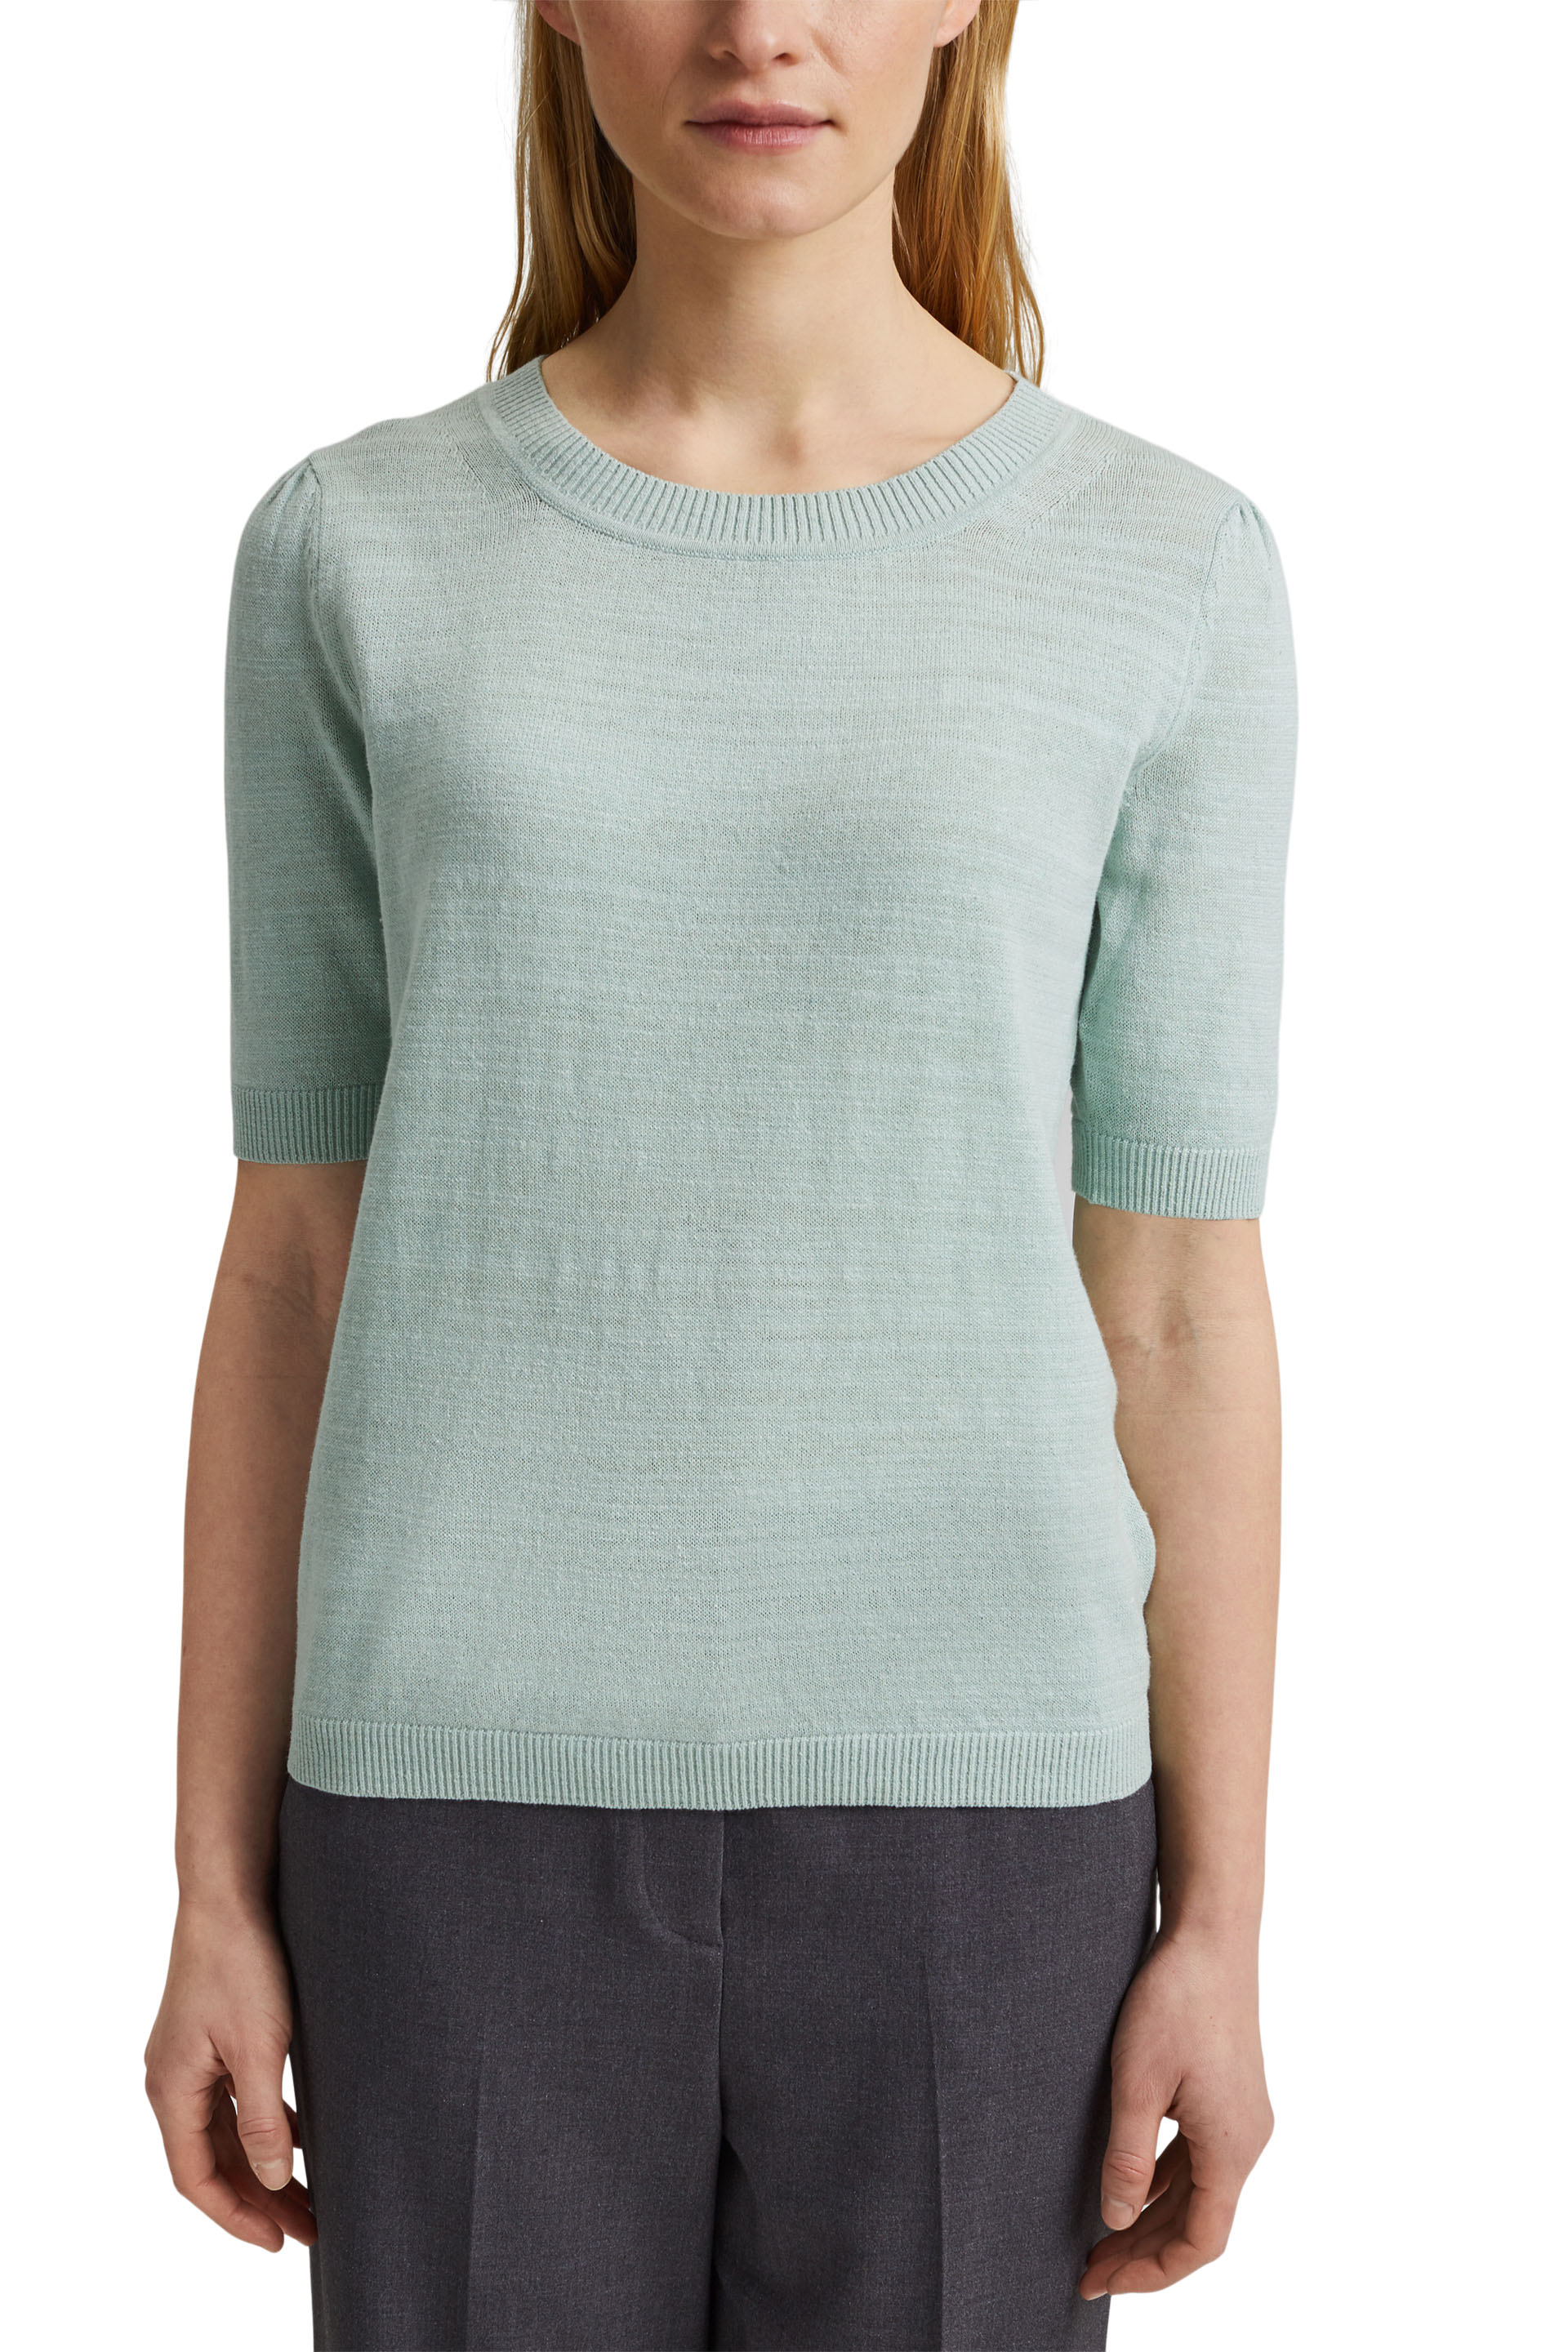 Leinen/Organic Cotton: Strick-Shirt